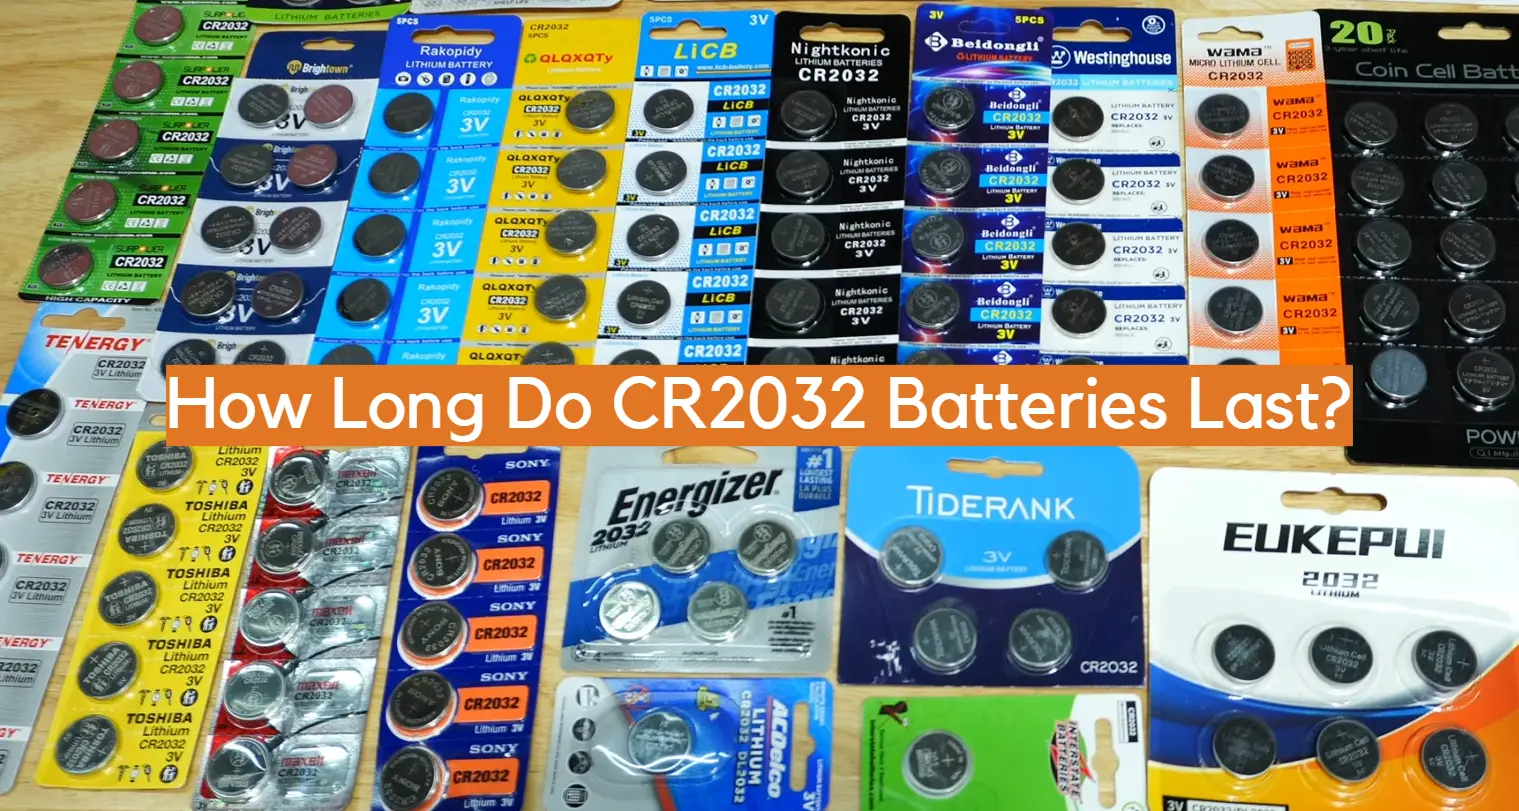 Batt Energy Shop - Varta lithium battery CR 2032 BULK 20 pieces